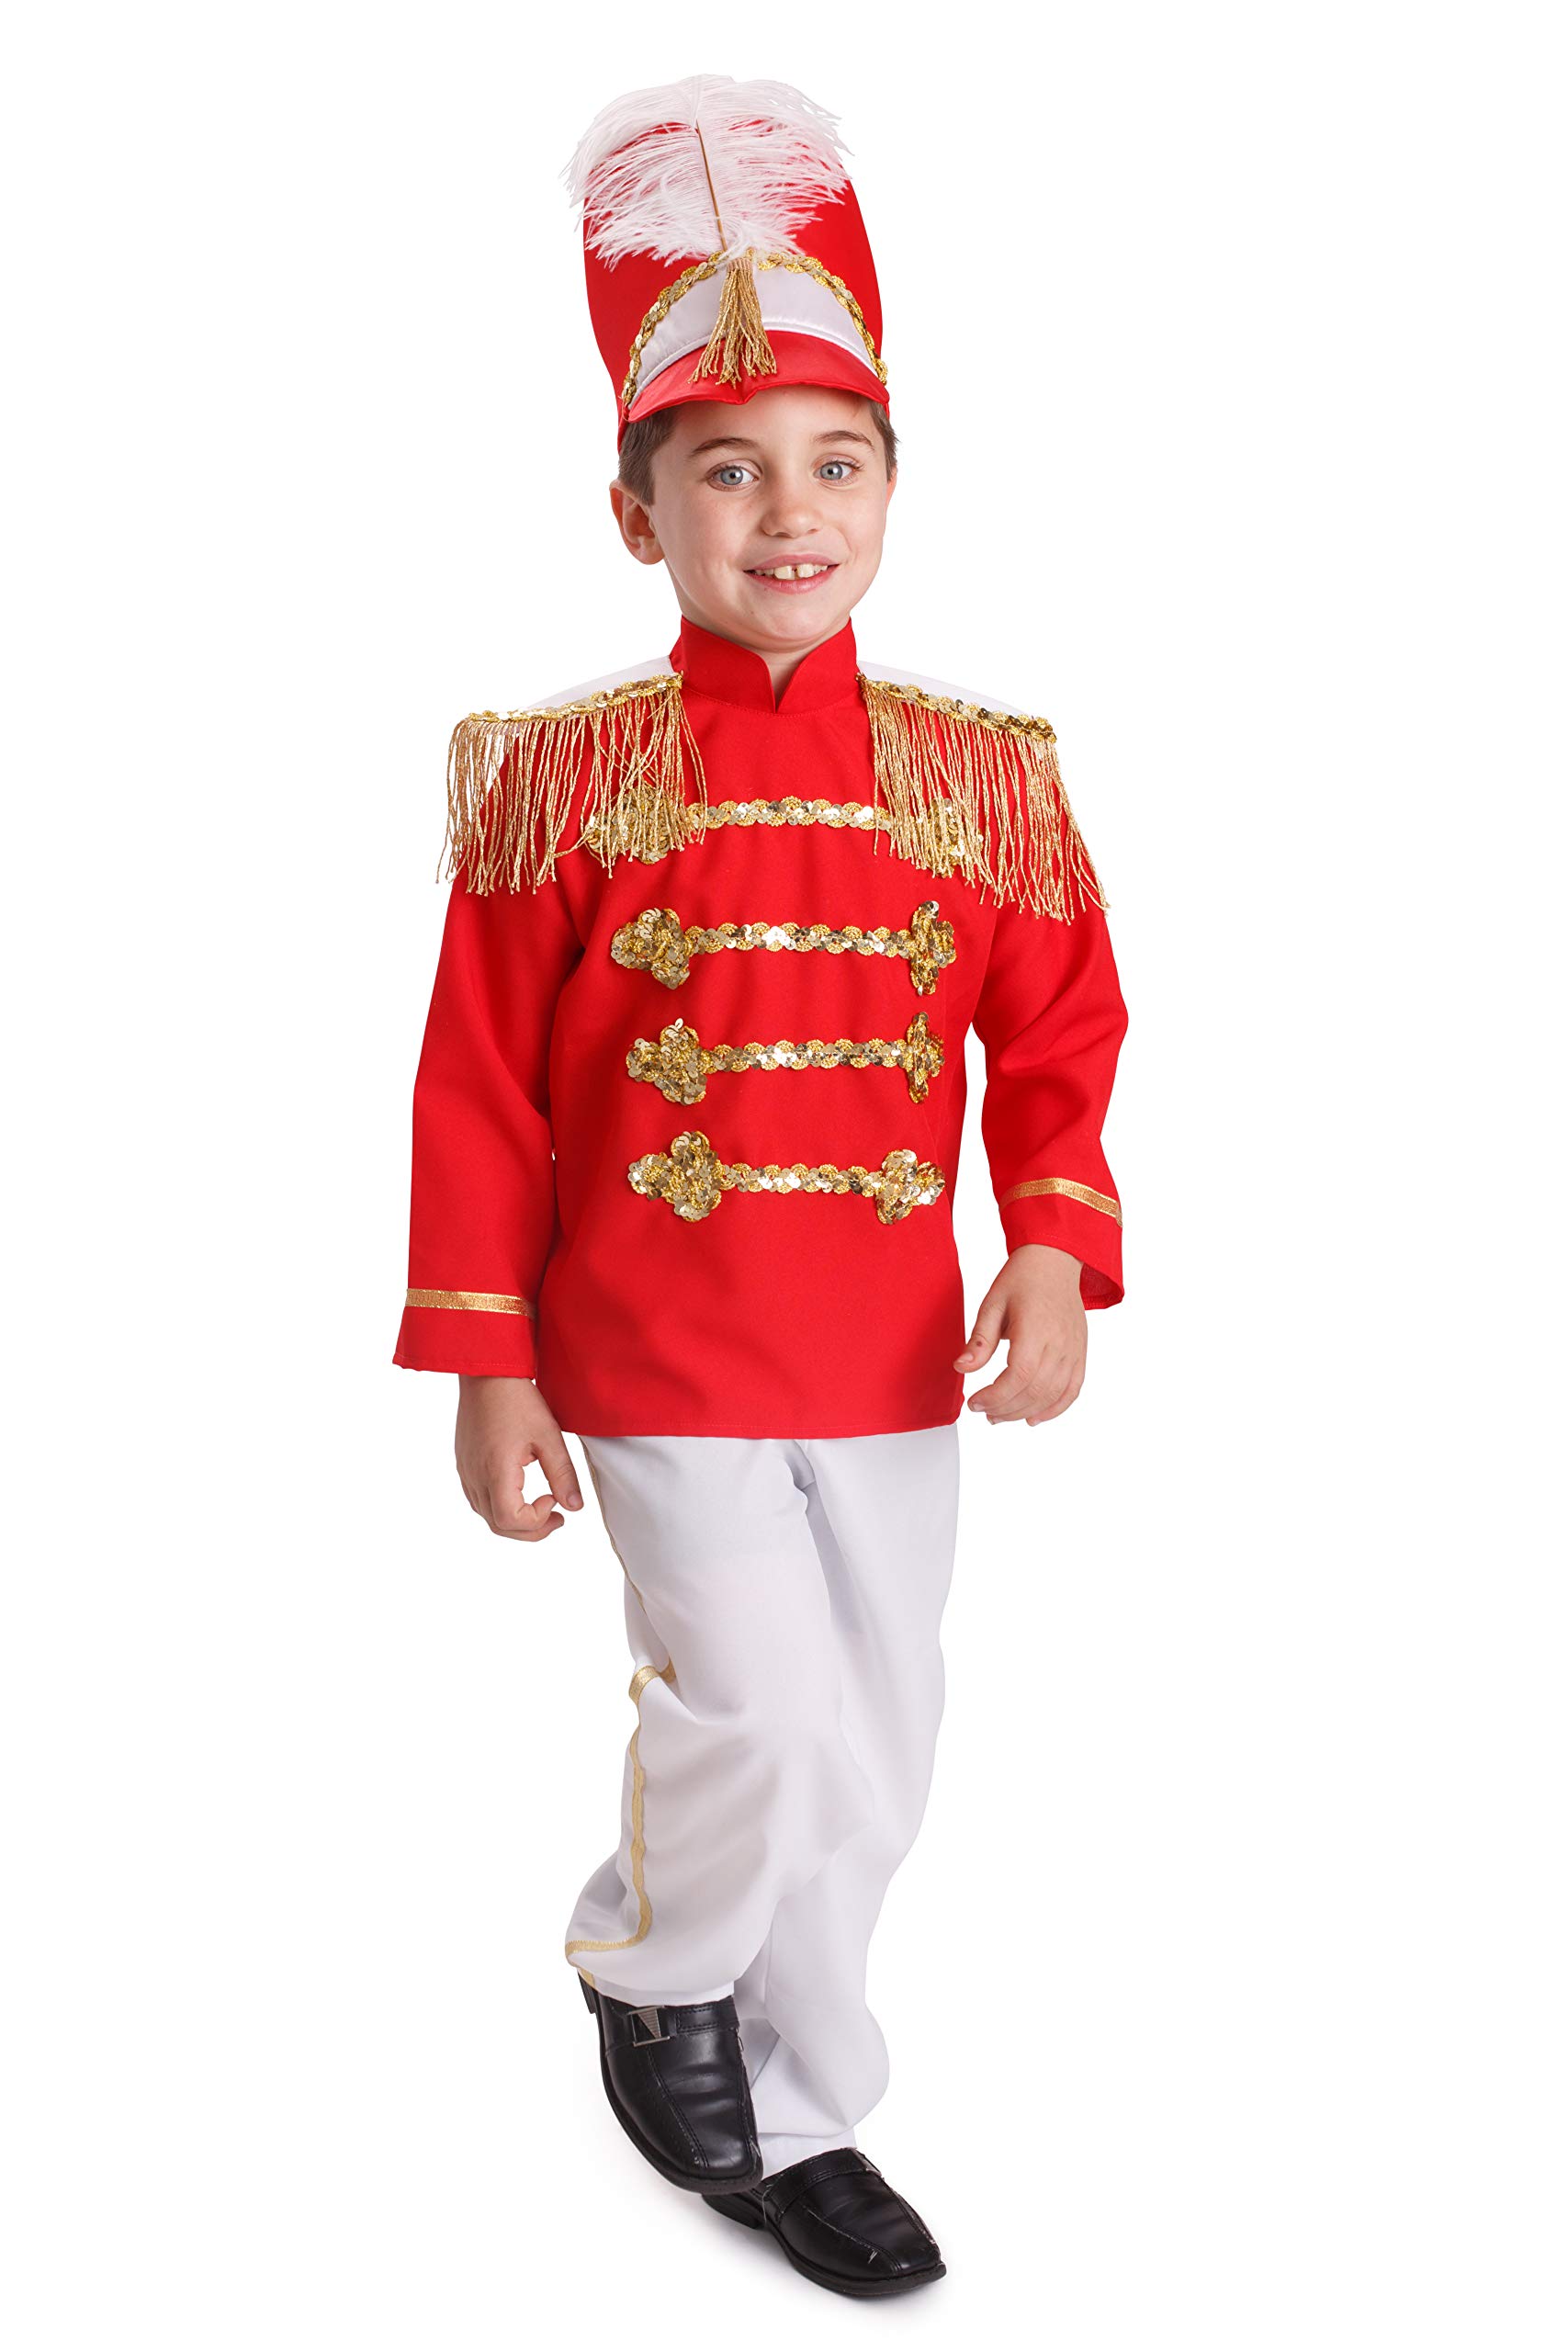 Dress Up America Jungen Schlagzeug Major Kinder Schickes Marschkapellen-Outfit - Größe Groß (12-14 Jahre)